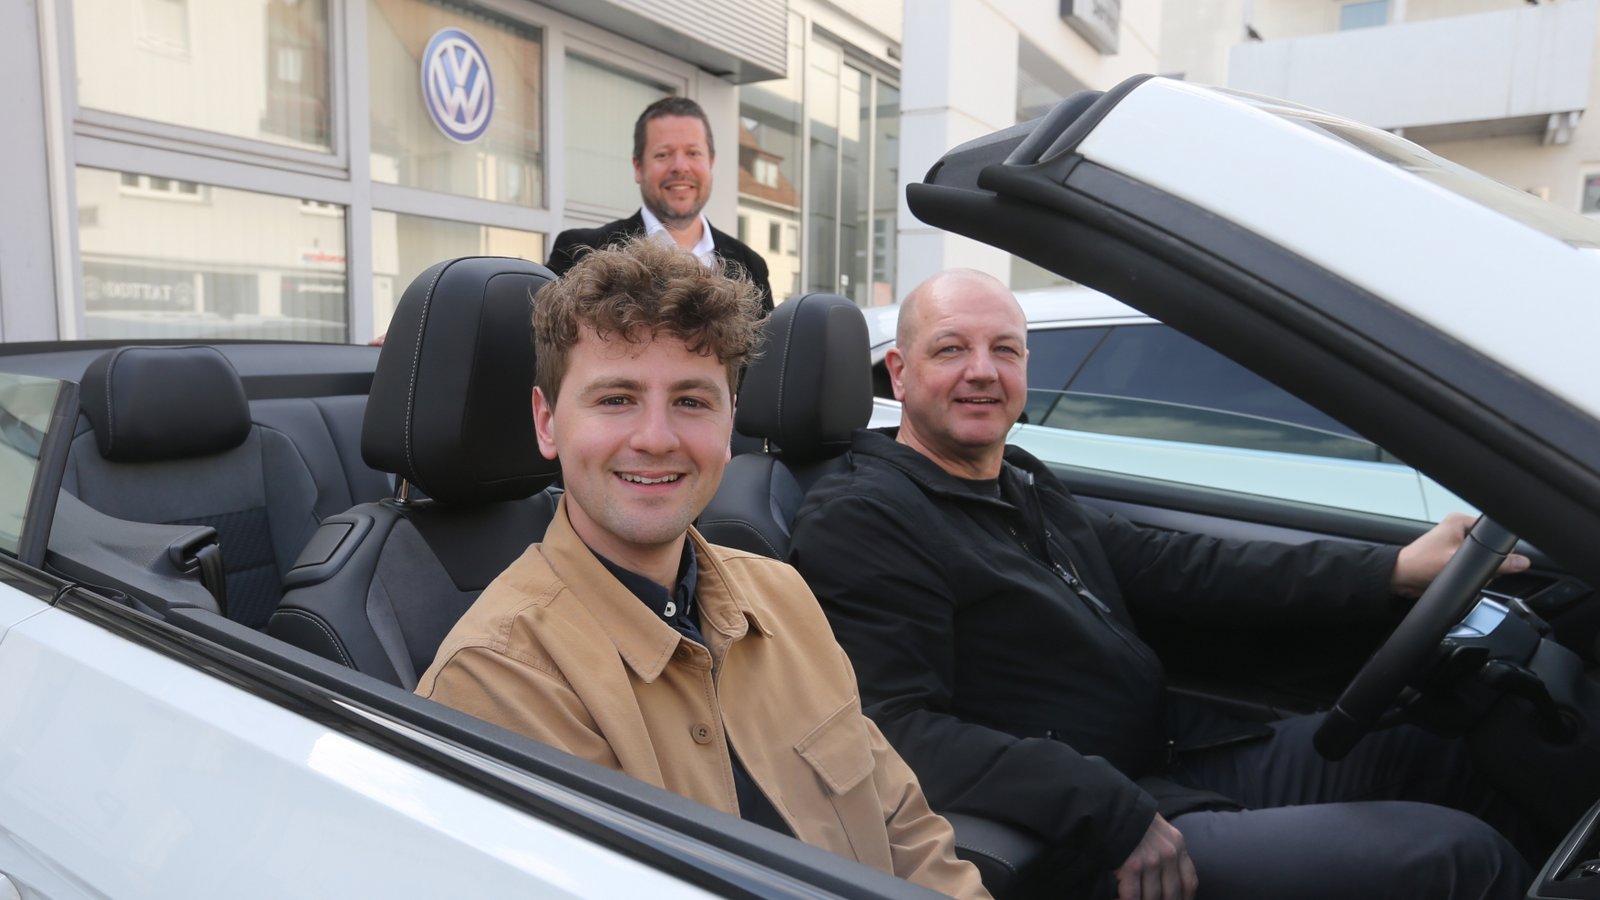 Gewinner Miguel Rapp (vorne) und sein Vater Harald Rapp nehmen bei Gunnar Bäuerle vom Sevo-Vertrieb das Cabrio für ihren Wochenendtrip nach München in Empfang.  <span class='image-autor'>Foto: Küppers</span>